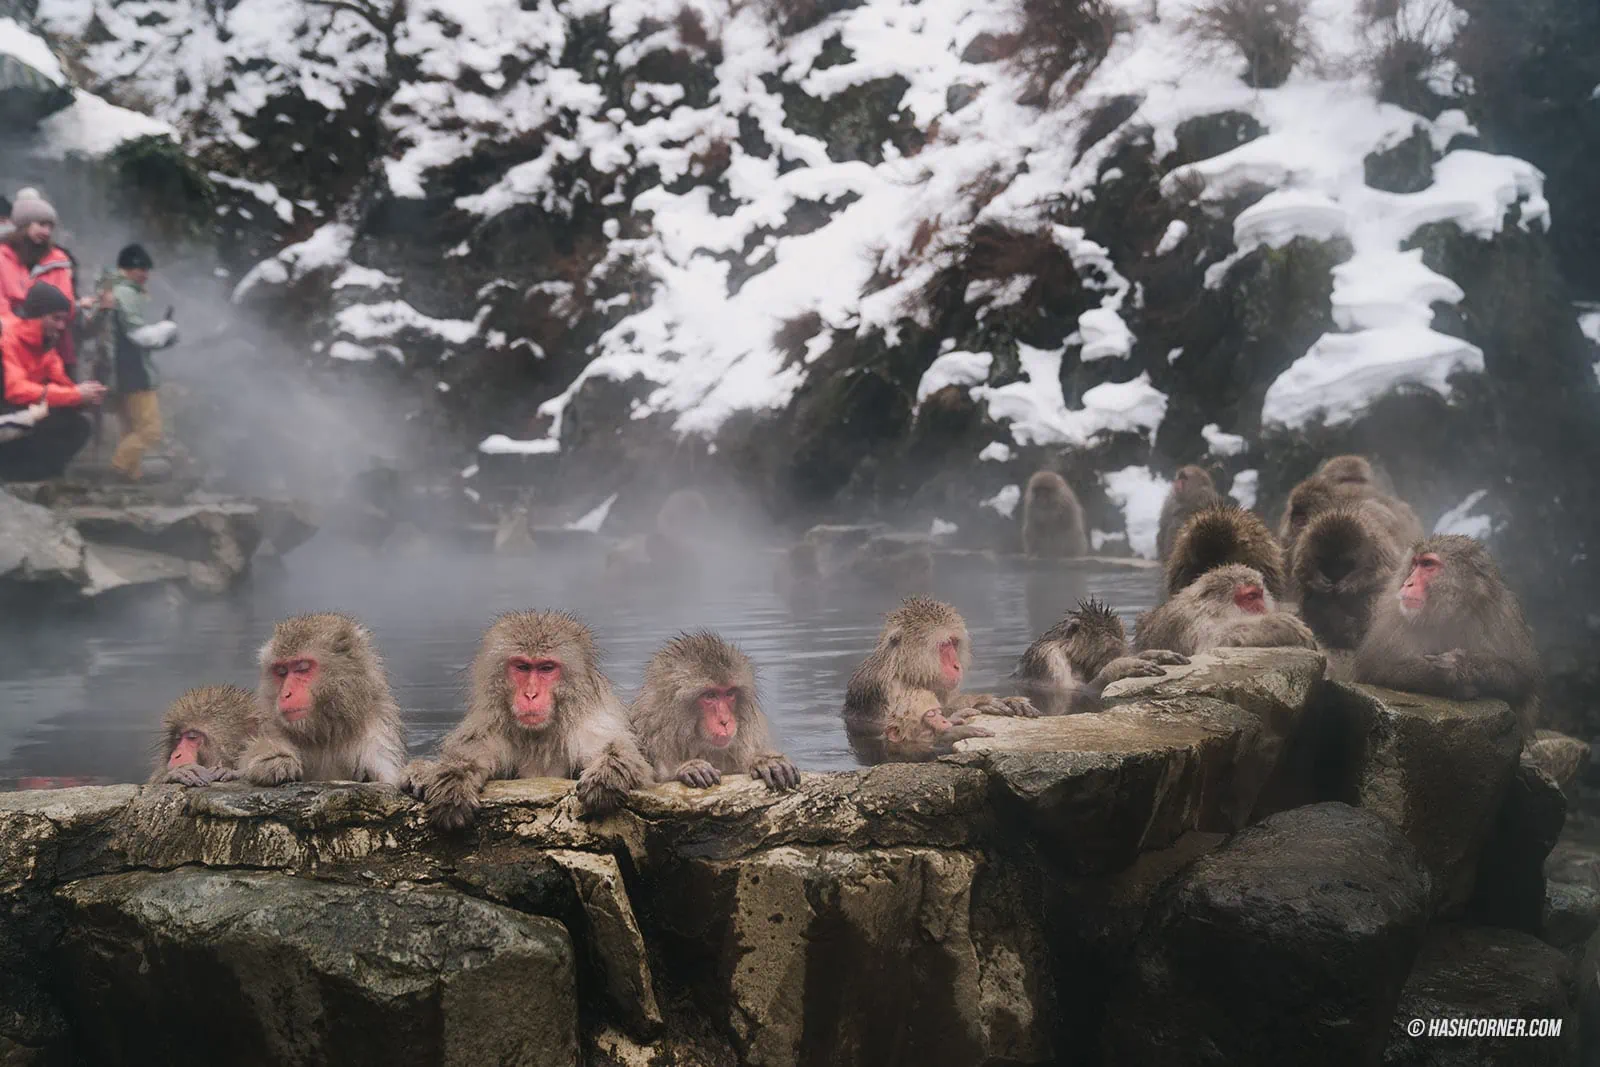 รีวิว สวนลิงจิโกคุดานิ (Snow Monkey Park) x นากาโน่ ดูลิงหิมะแช่ออนเซ็น